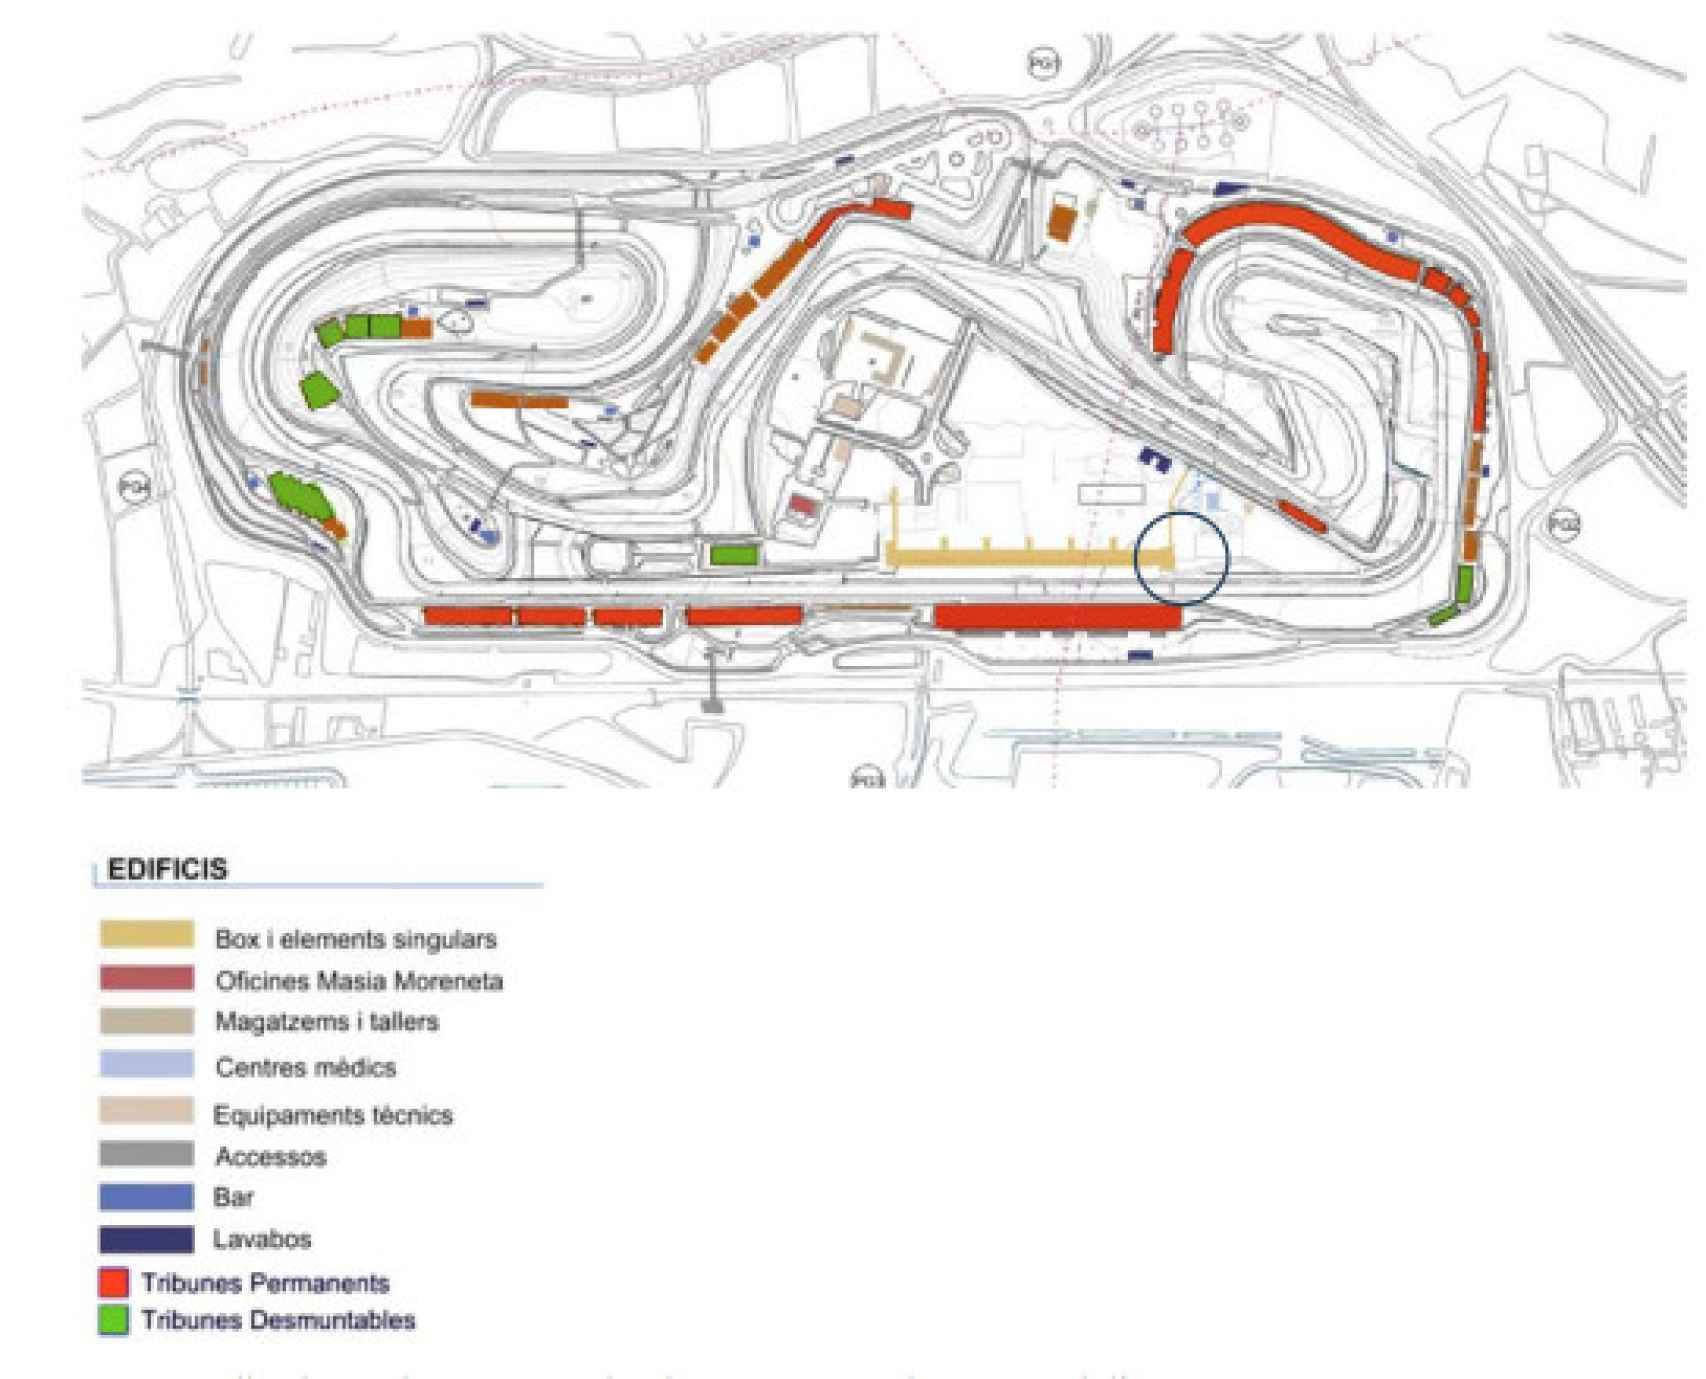 Mapa del Circuito de Montmeló. El círculo azul señala la ubicación de la torre de control y los boxes